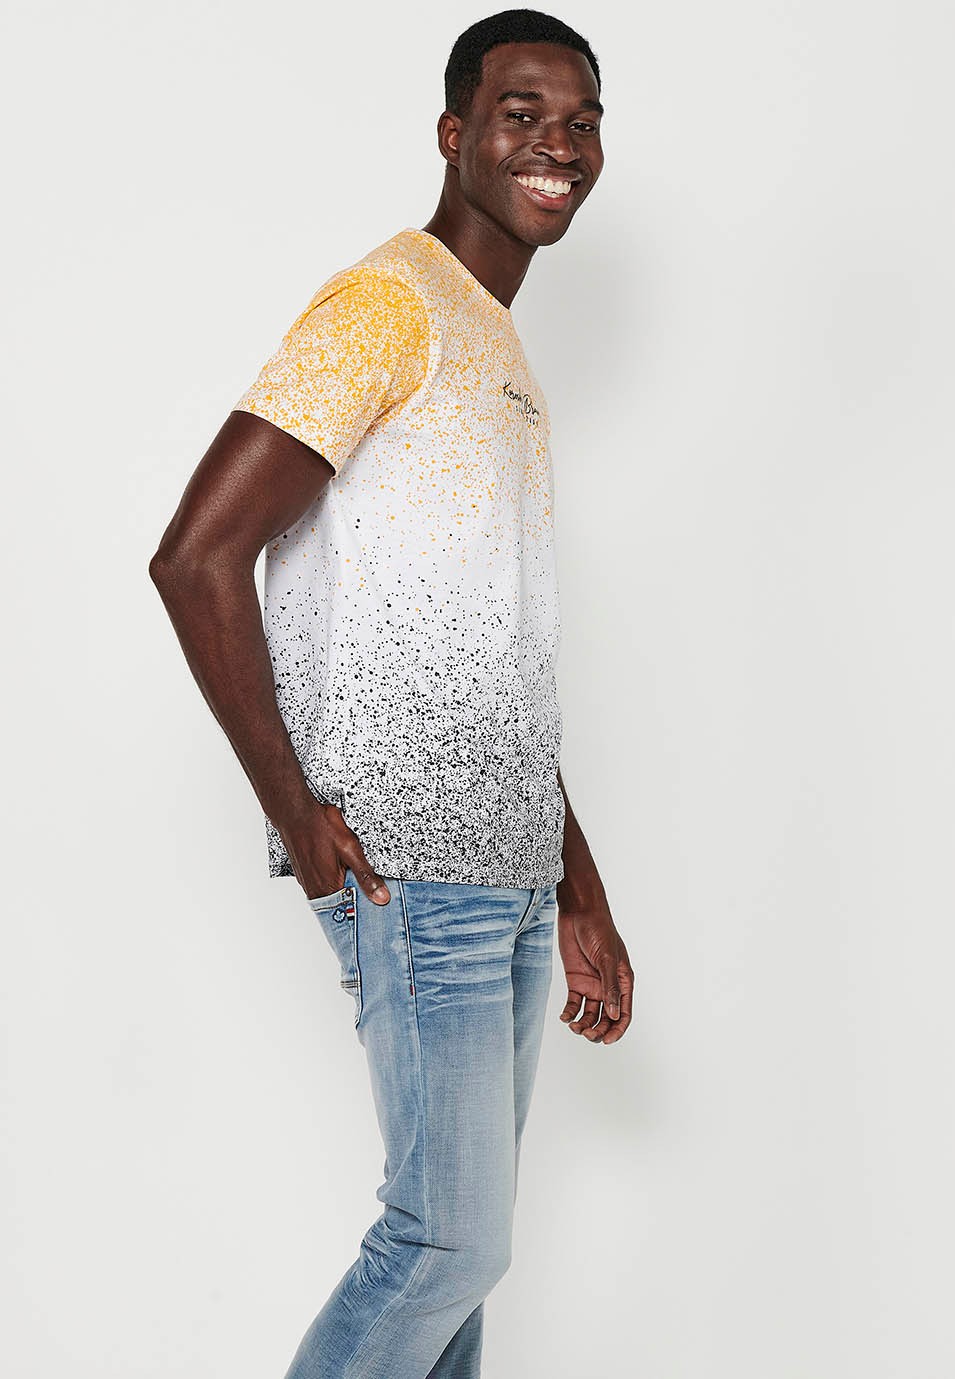 T-shirt à manches courtes et col rond pour hommes, imprimé dégradé jaune